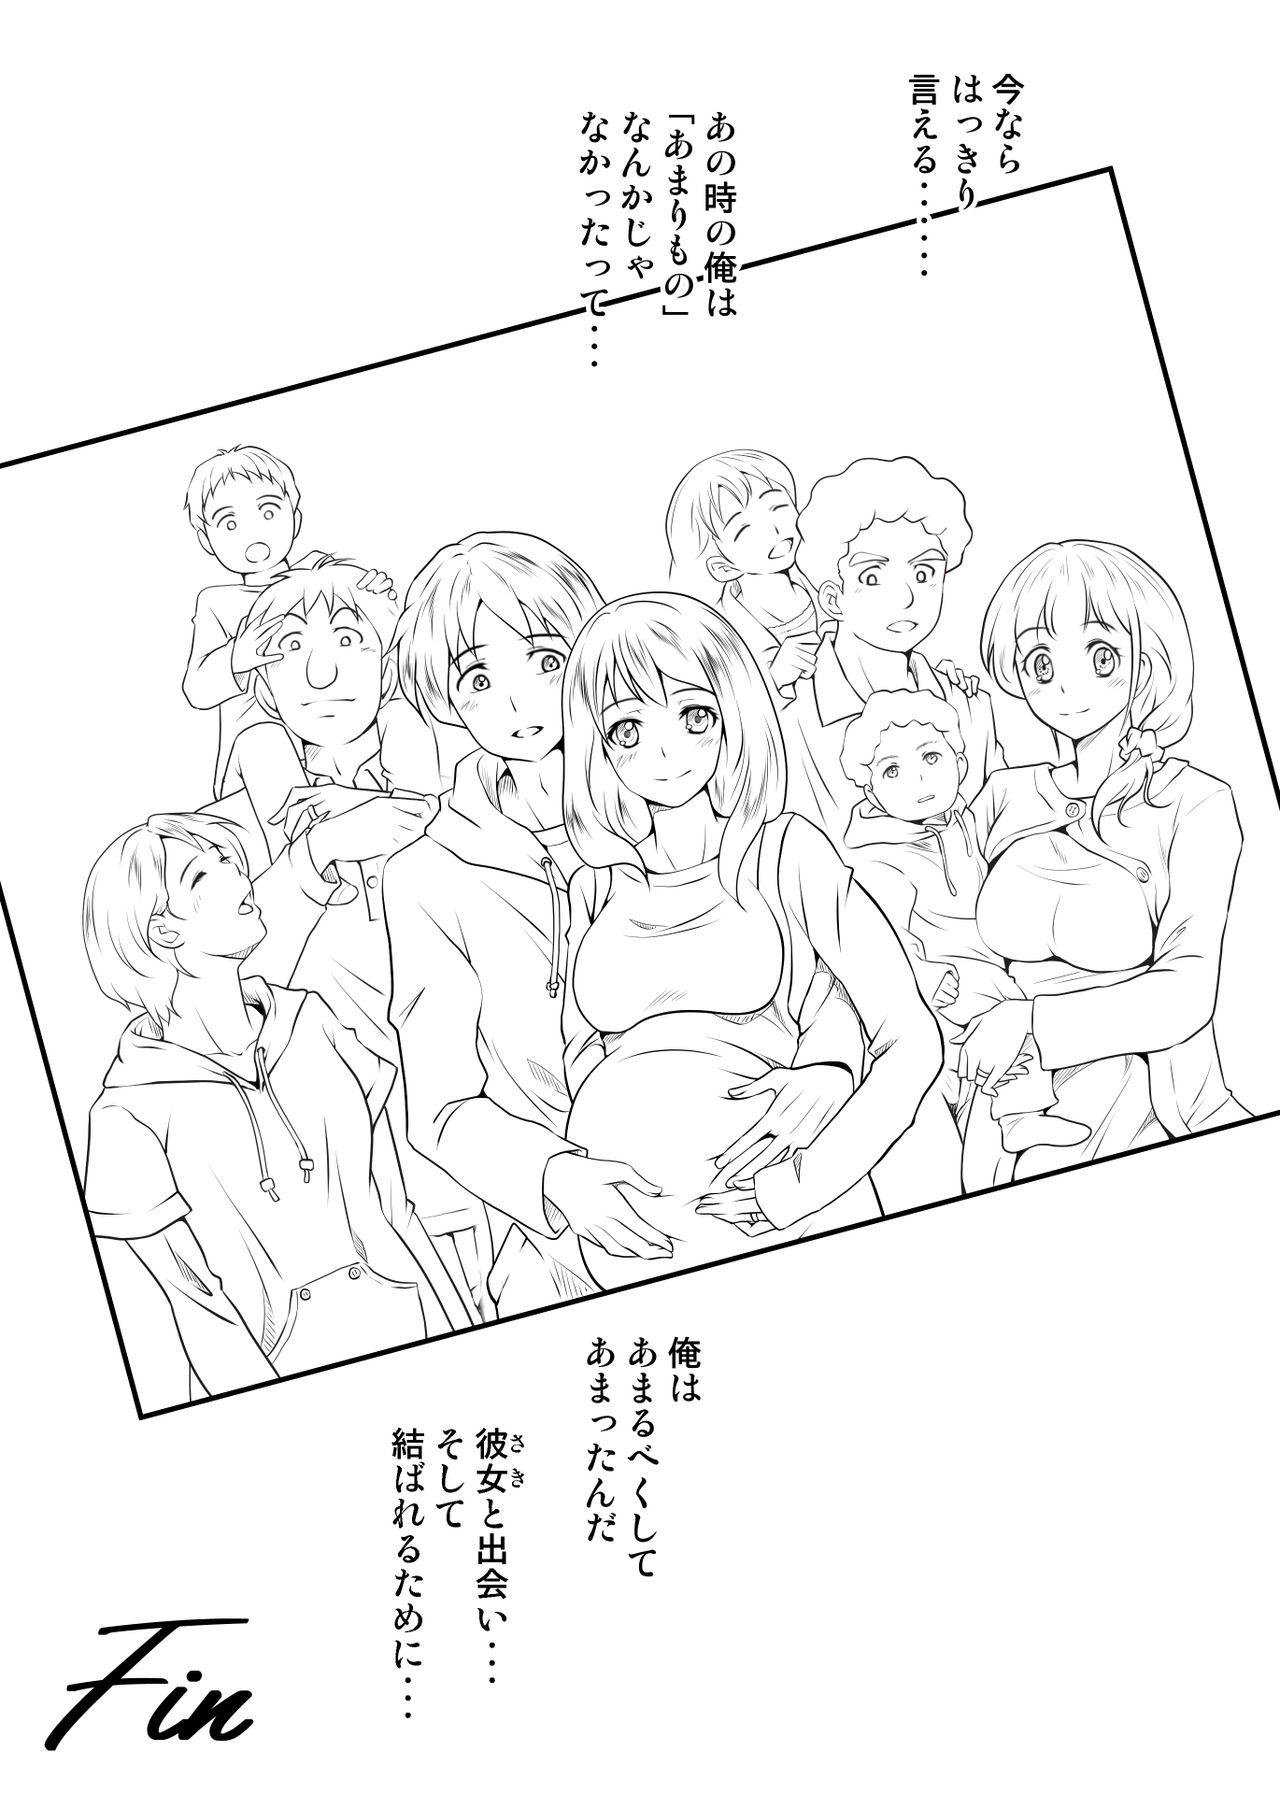 Gaysex Tento de panpan - shurafu no naka wa otsuyu to seieki no nioi ga munmun - Original Bukkake - Page 80